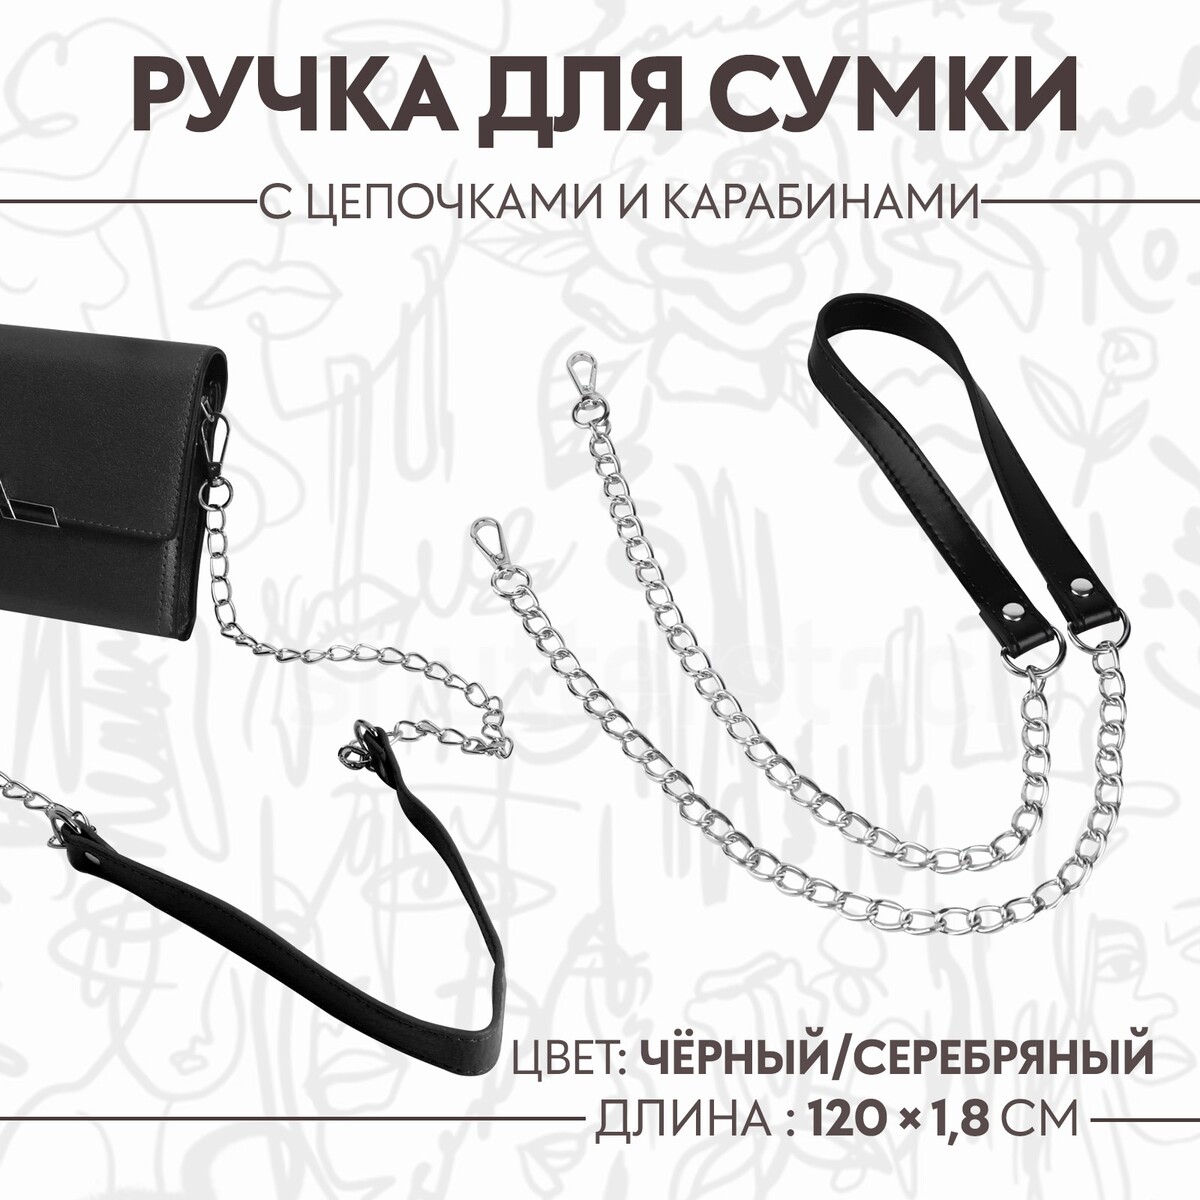 Ручка для сумки, с цепочками и карабинами, 120 × 1,8 см, цвет черный ручка шнурок для сумки с карабинами 120 × 0 6 см